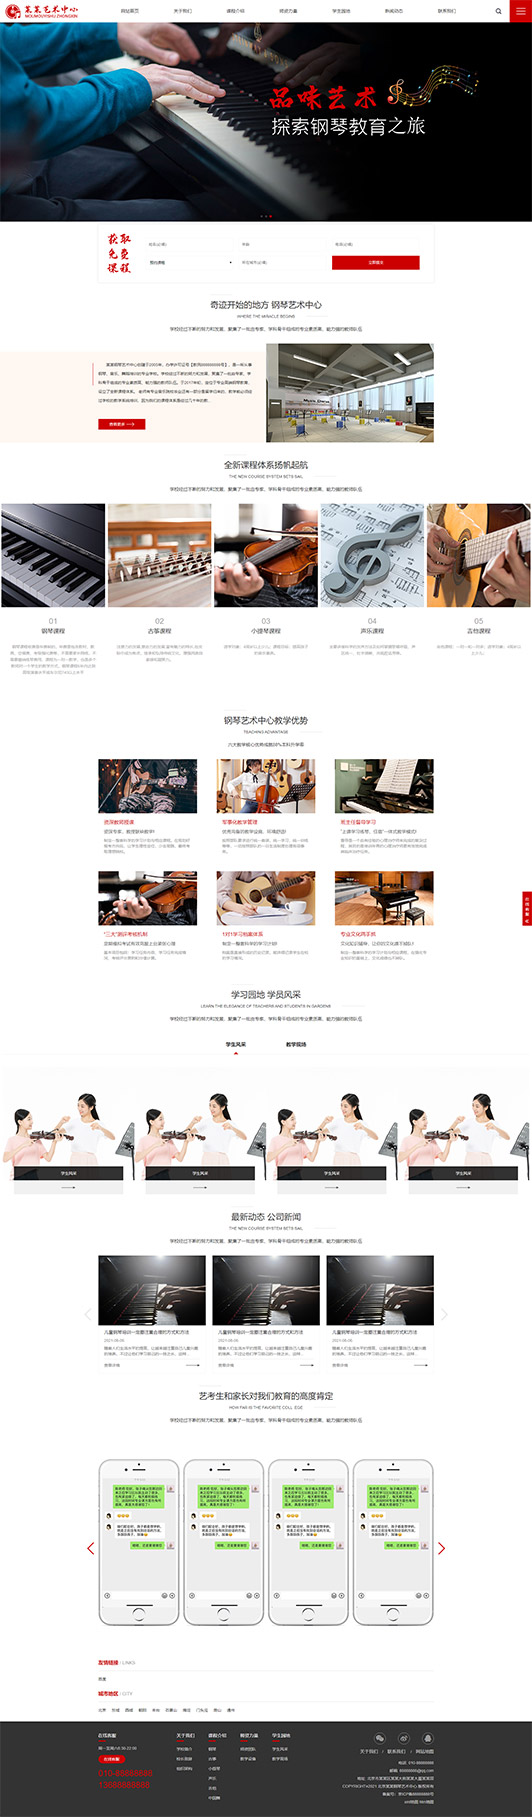 凉山钢琴艺术培训公司响应式企业网站